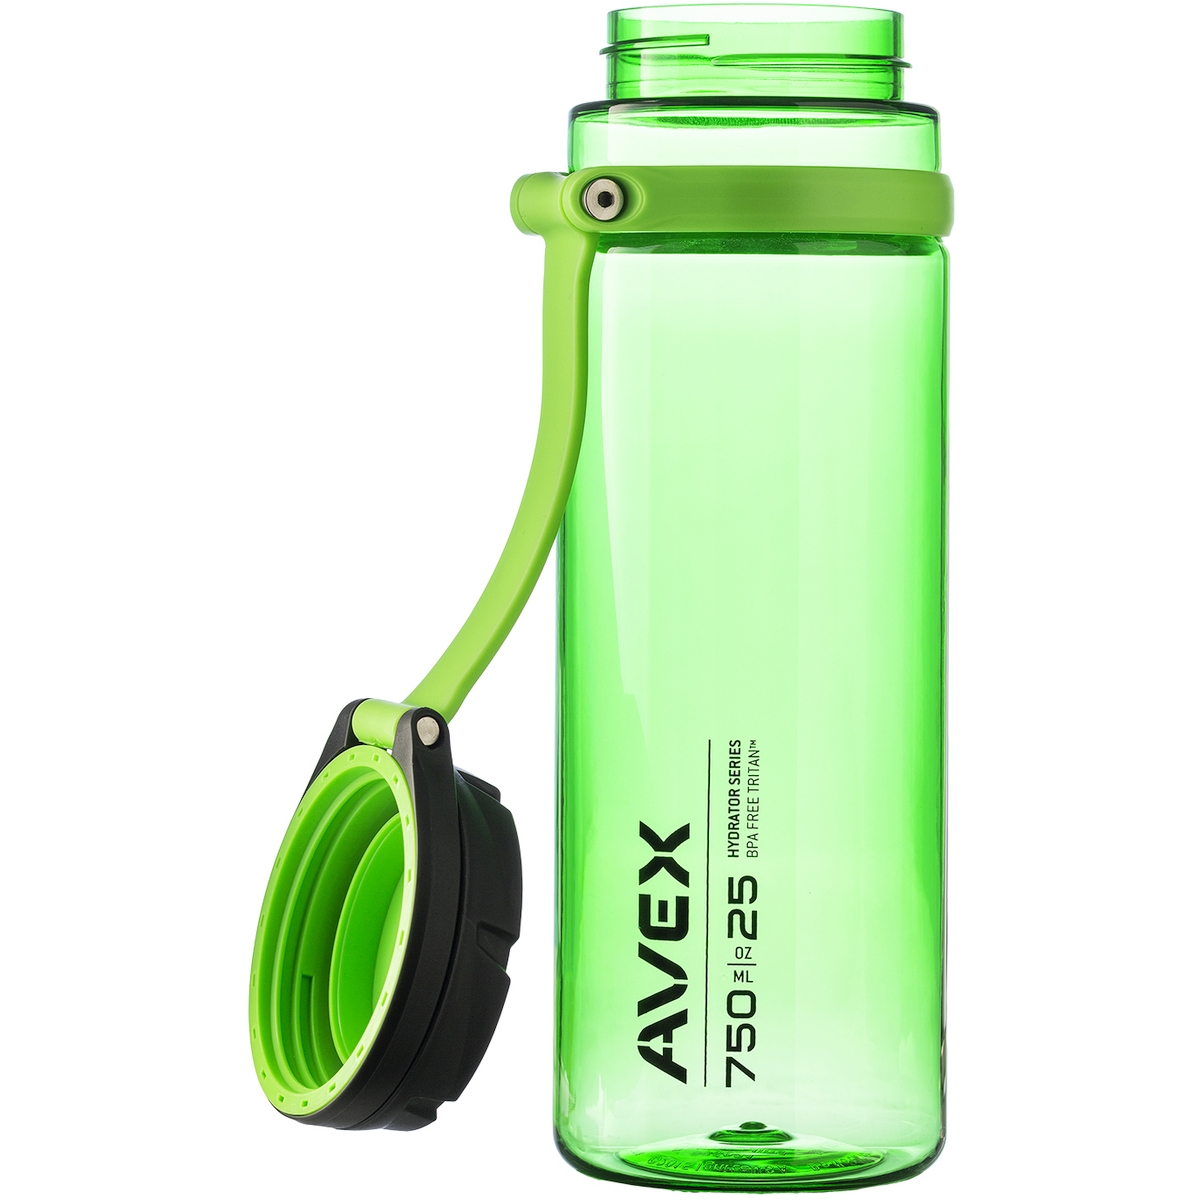    Avex Fuse Green , 0.75  (Avex AVEX0751)